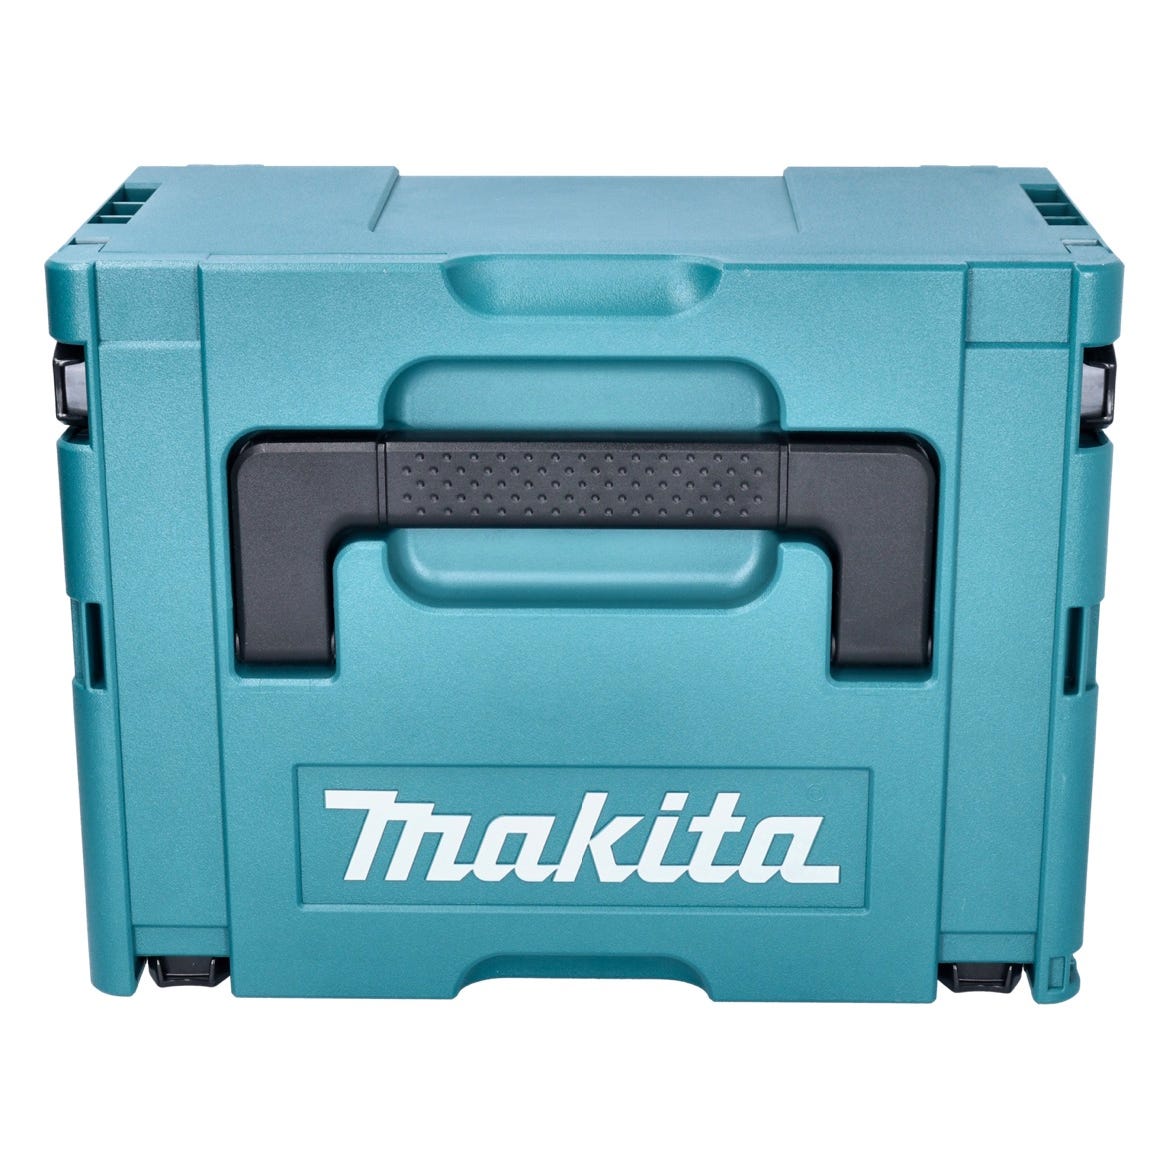 Makita DHR 183 ZJ marteau perforateur sans fil 18 V 1.7 J SDS plus brushless + Makpac - sans batterie, sans kit chargeur 2